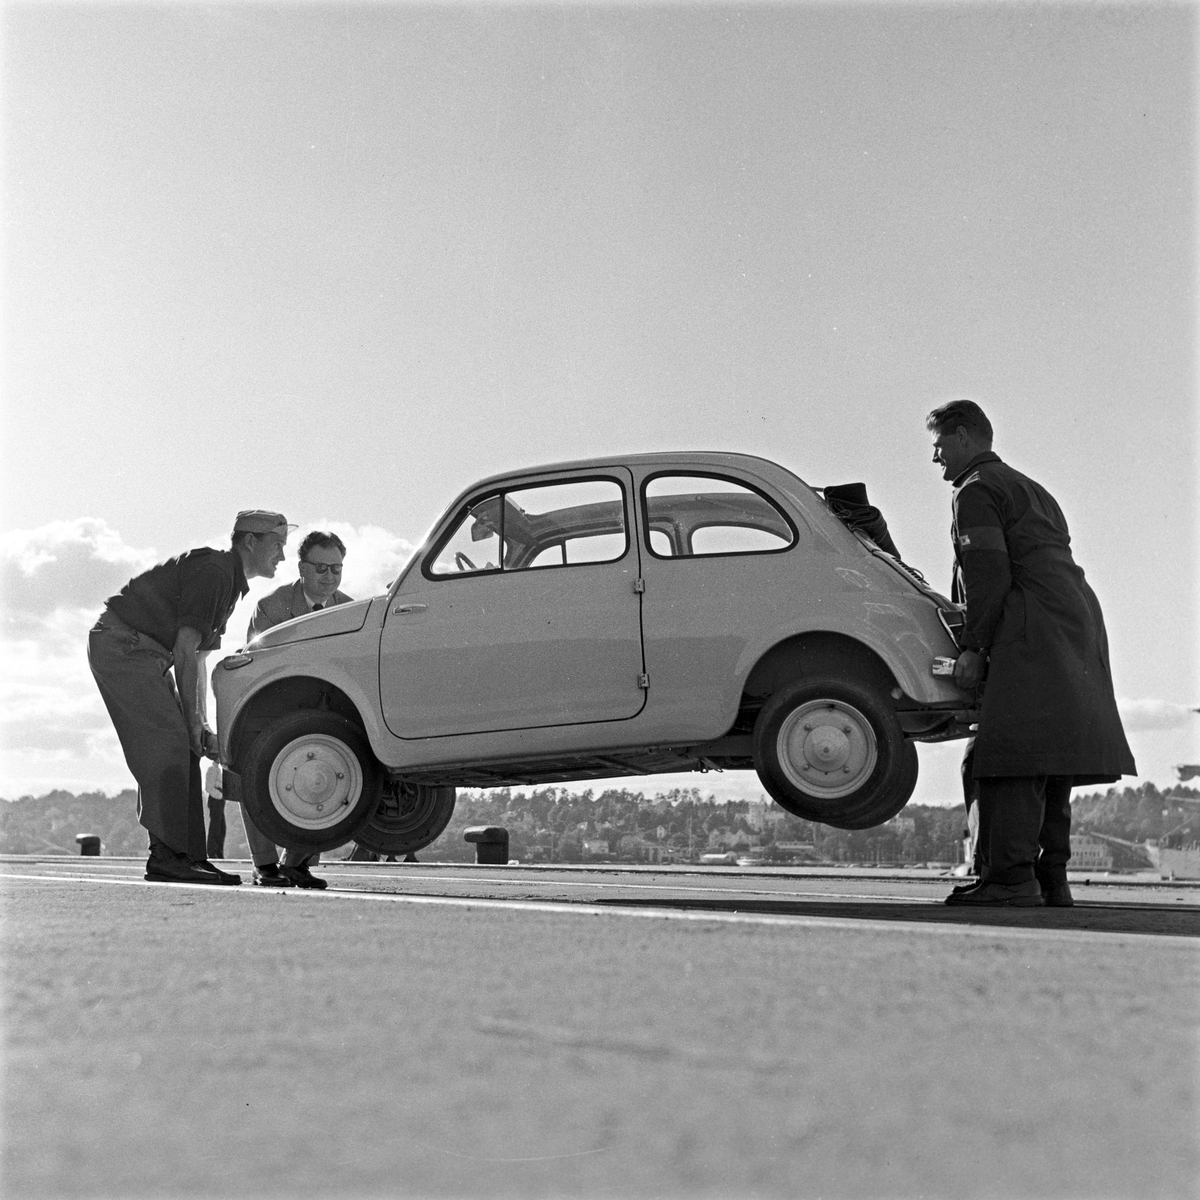 Serie. Test av bilmodellen Fiat 500. Bilen er fotografert bl.a. foran Frammuseet og Kon-Tiki Museet.

